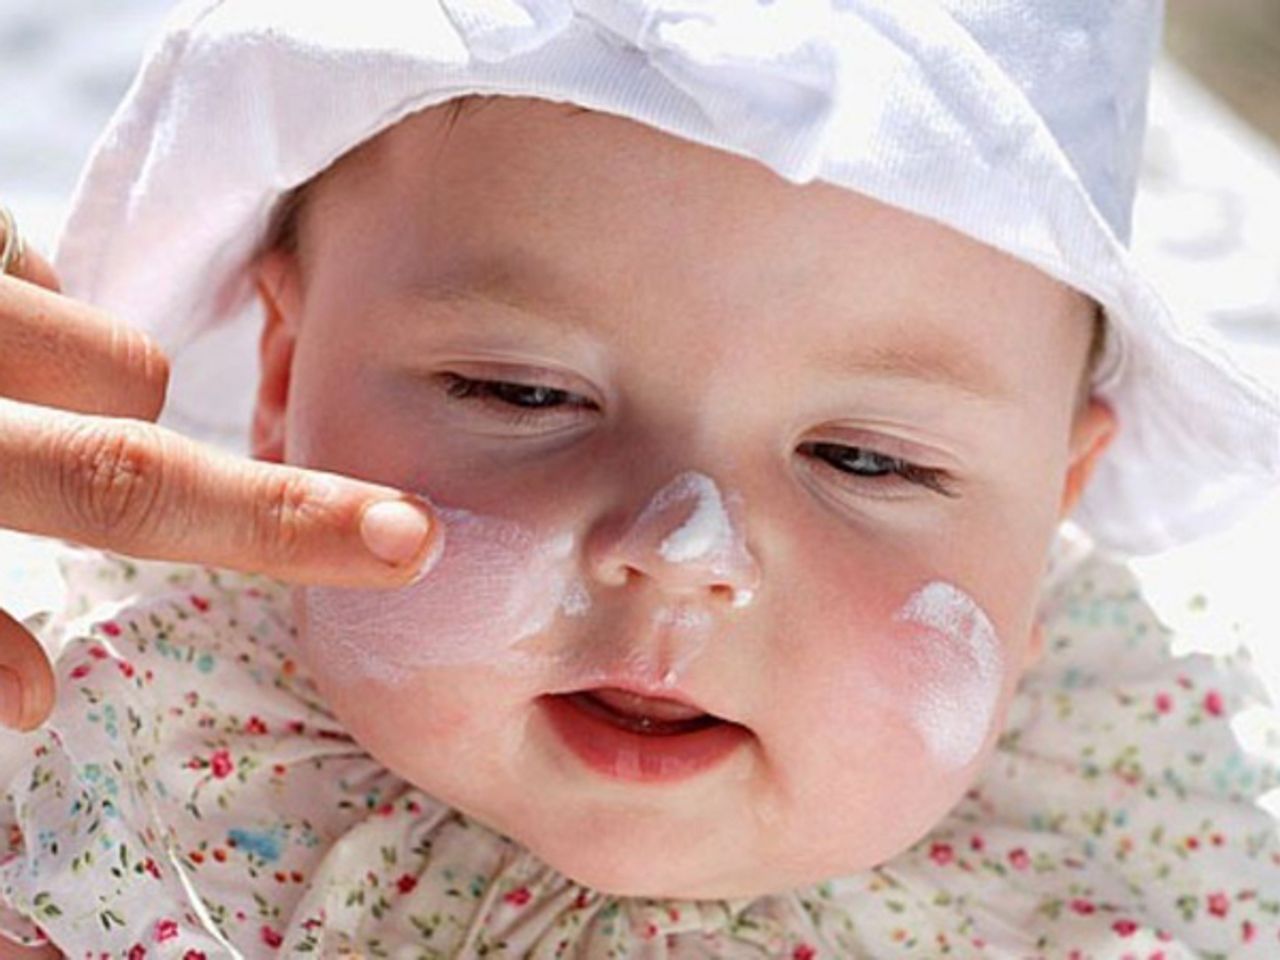 Kem chống nắng La Roche Posay cho bé an toàn, không gây kích ứng da